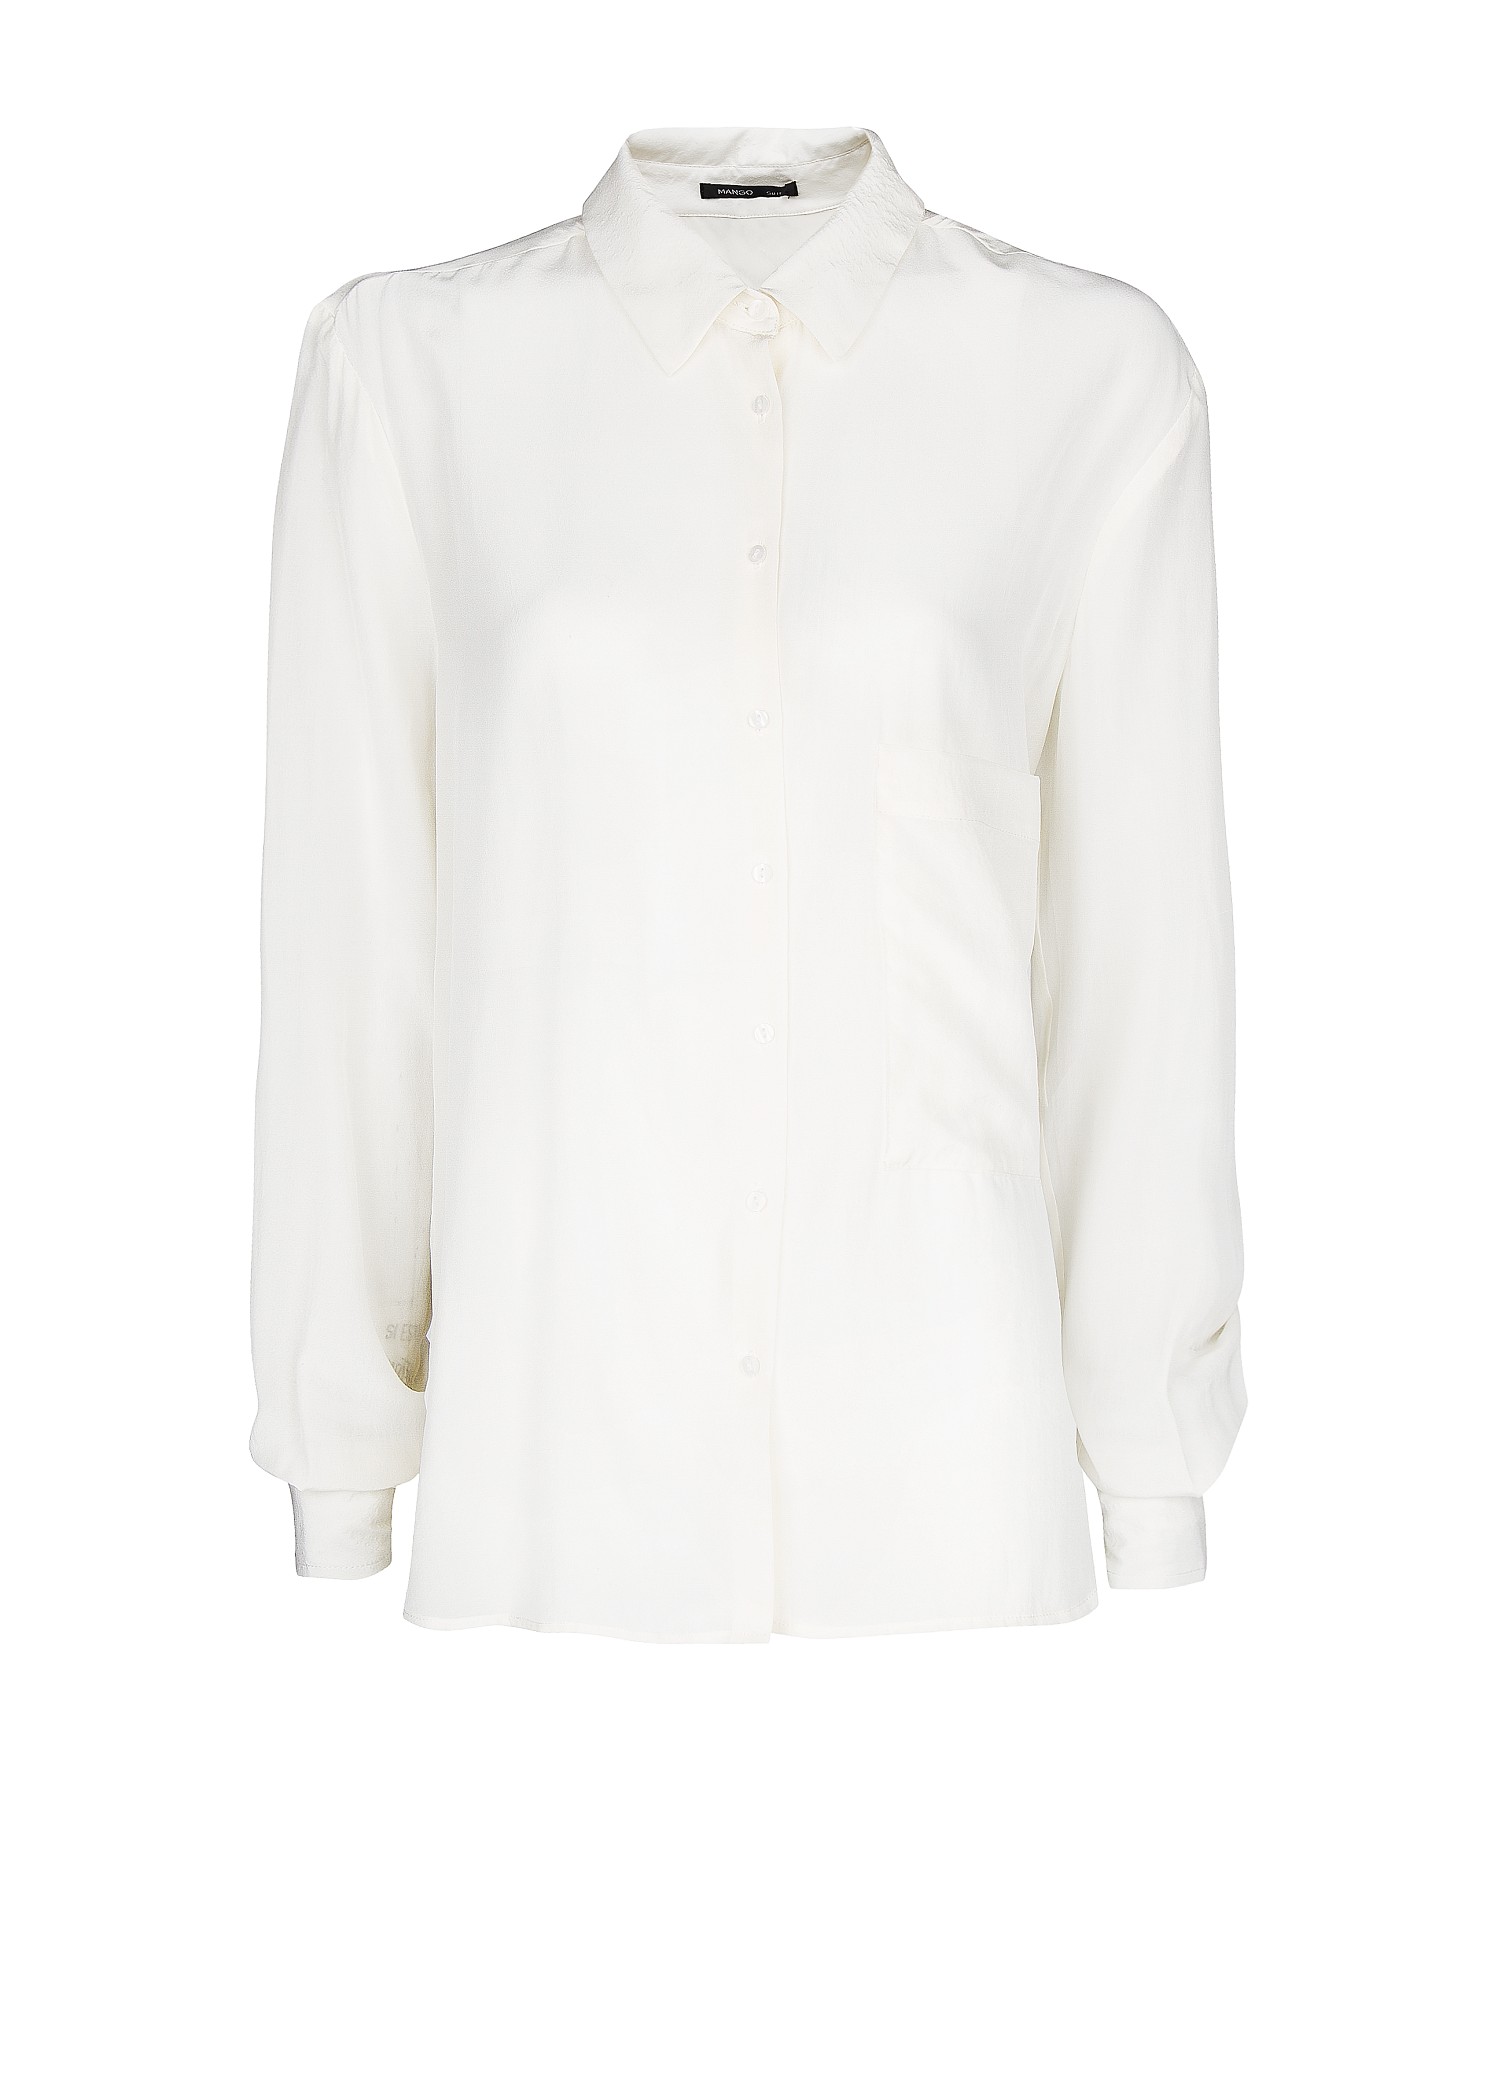 Lyst - Mango Silk Shirt in White